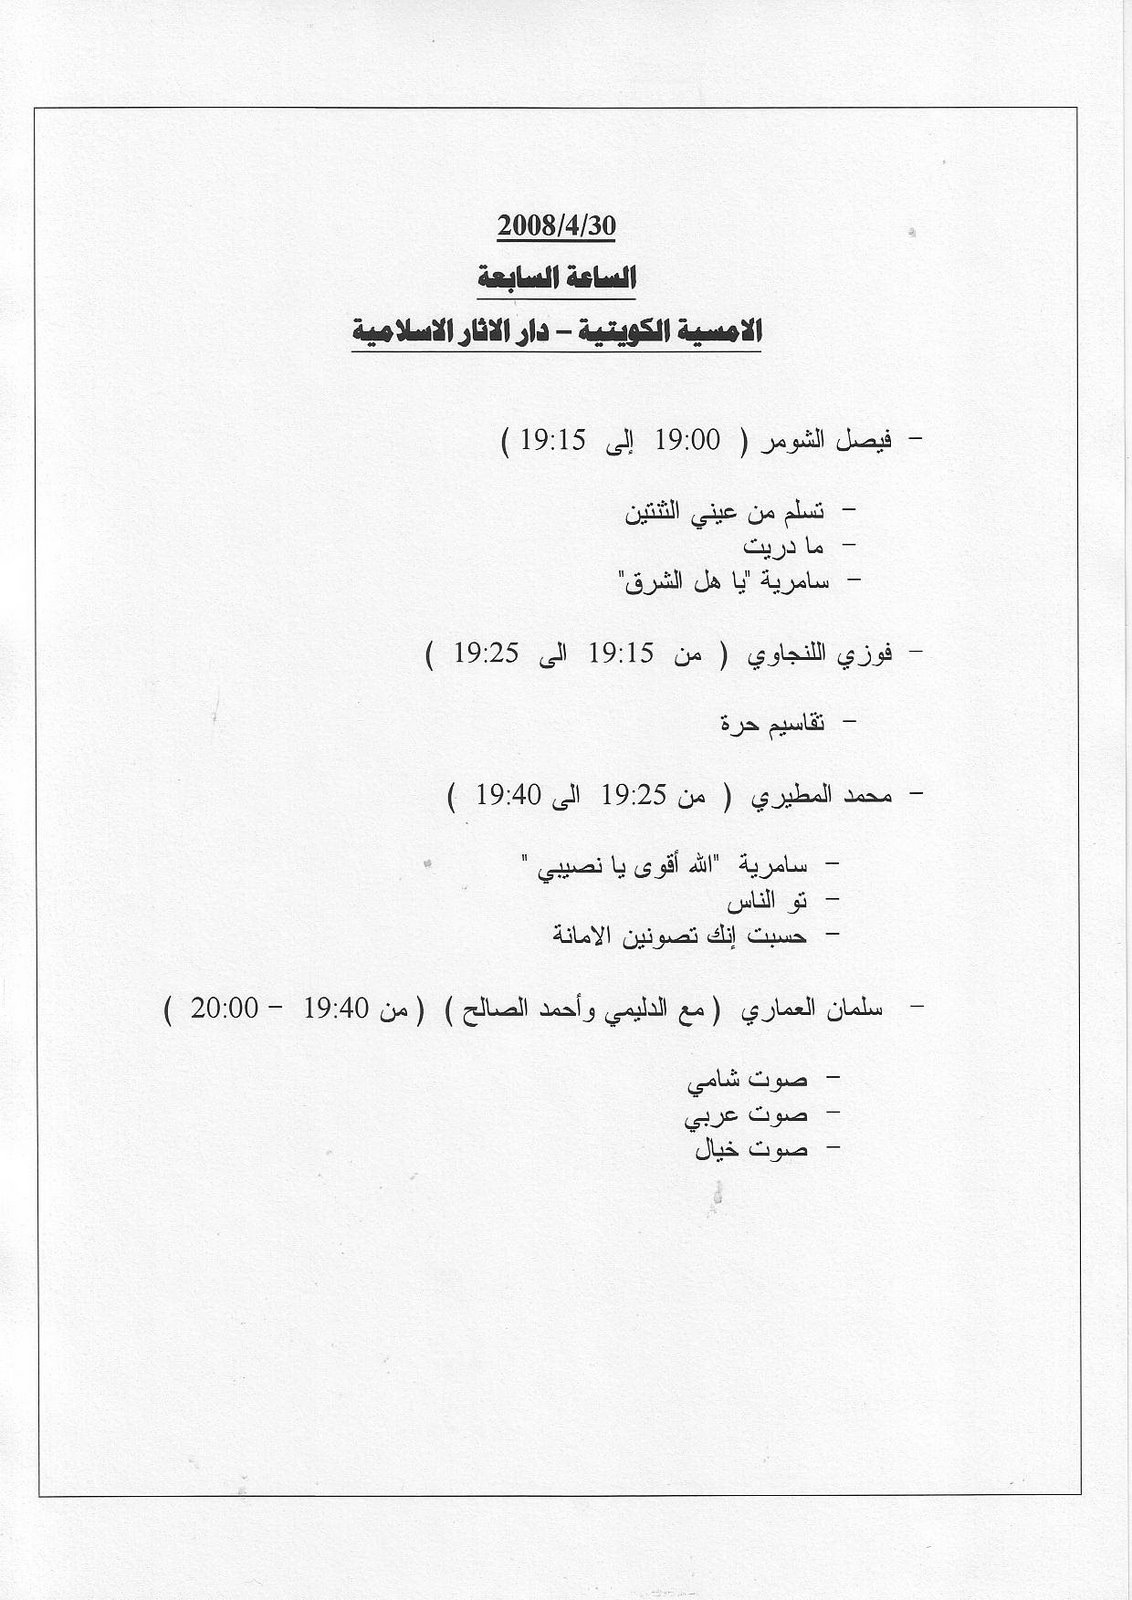 [30+April+08+Arabic+-+programme.jpg]